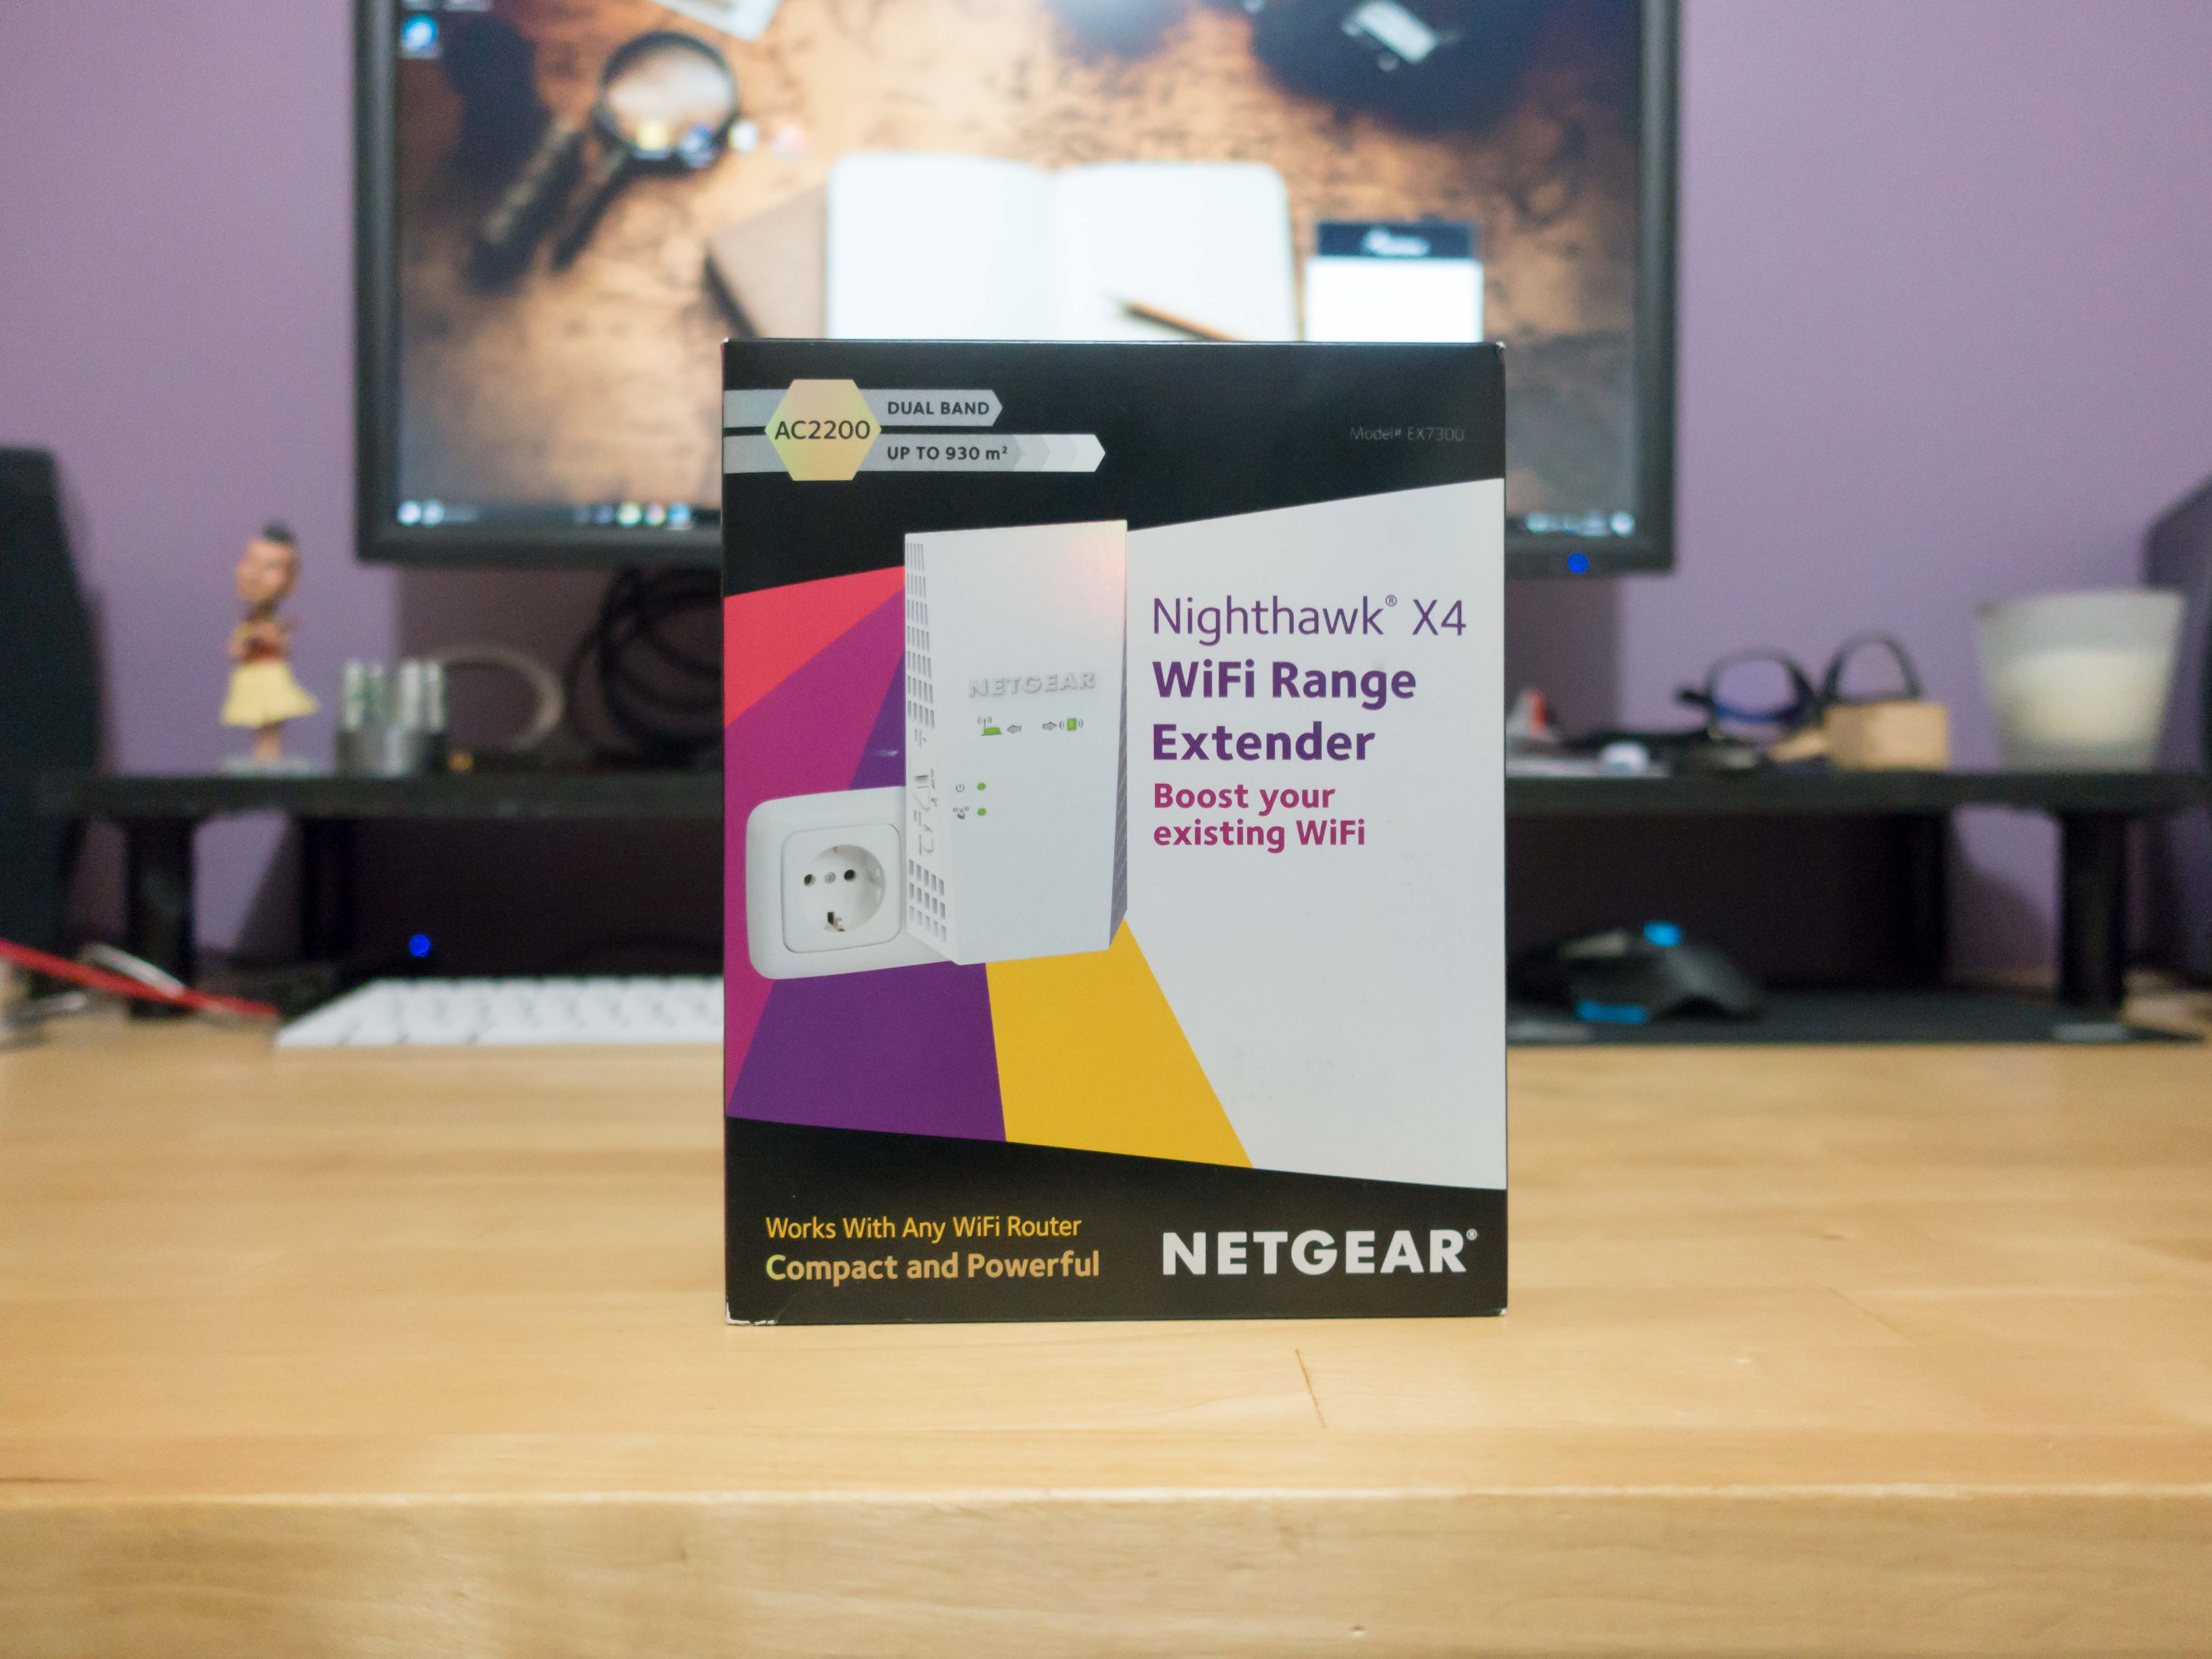 Etendre votre réseau wifi avec le répéteur Wifi Nighthawk X4 EX7300 de Netgear